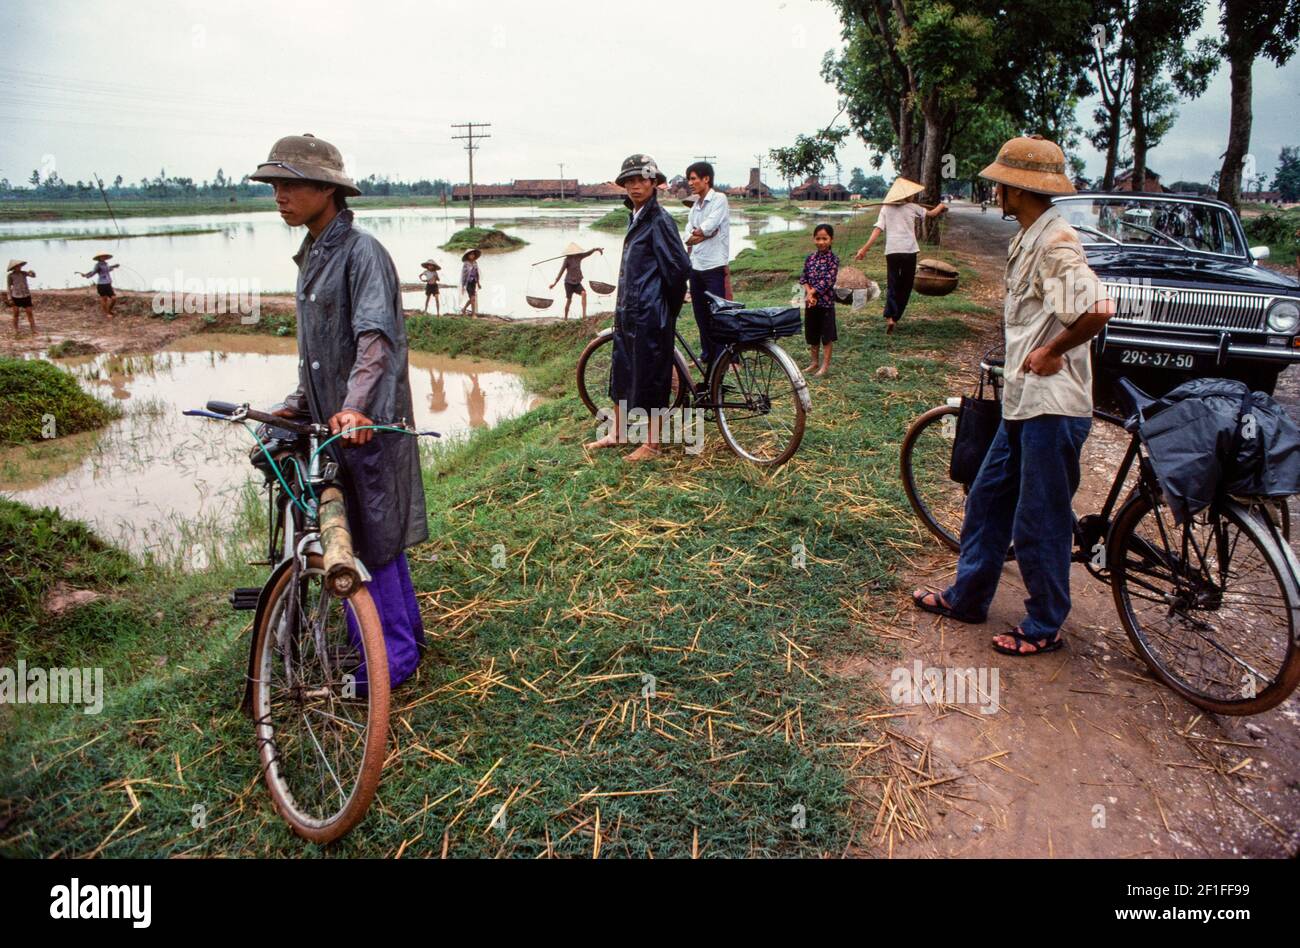 Les gens qui regardent des villageois pêcher dans les étangs à poissons avec leurs paniers de pêche, dans les zones rurales du sud du Vietnam, juin 1980 Banque D'Images